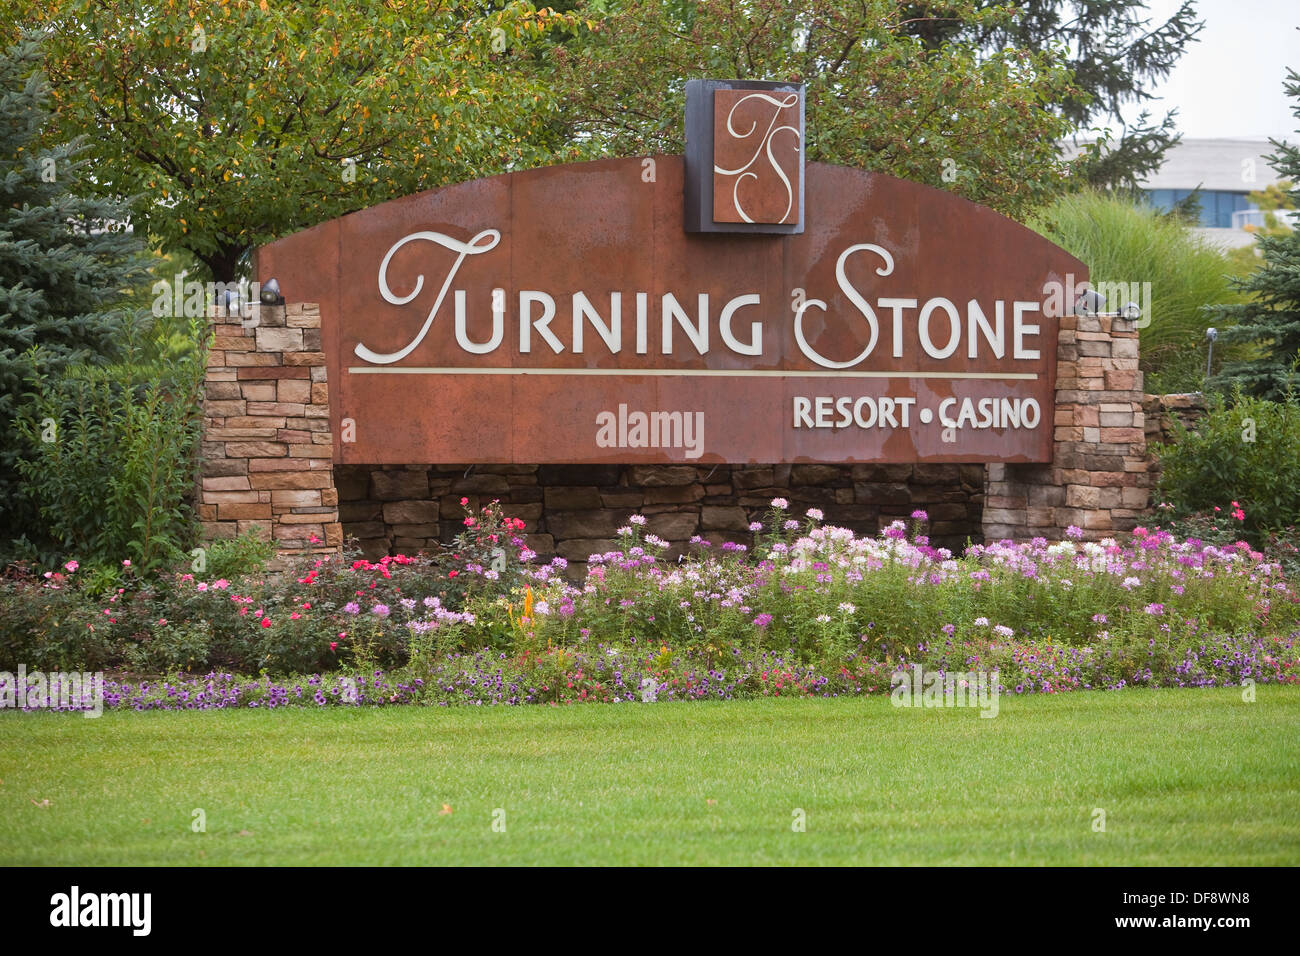 Turning Stone Resort Casino edward jones logo